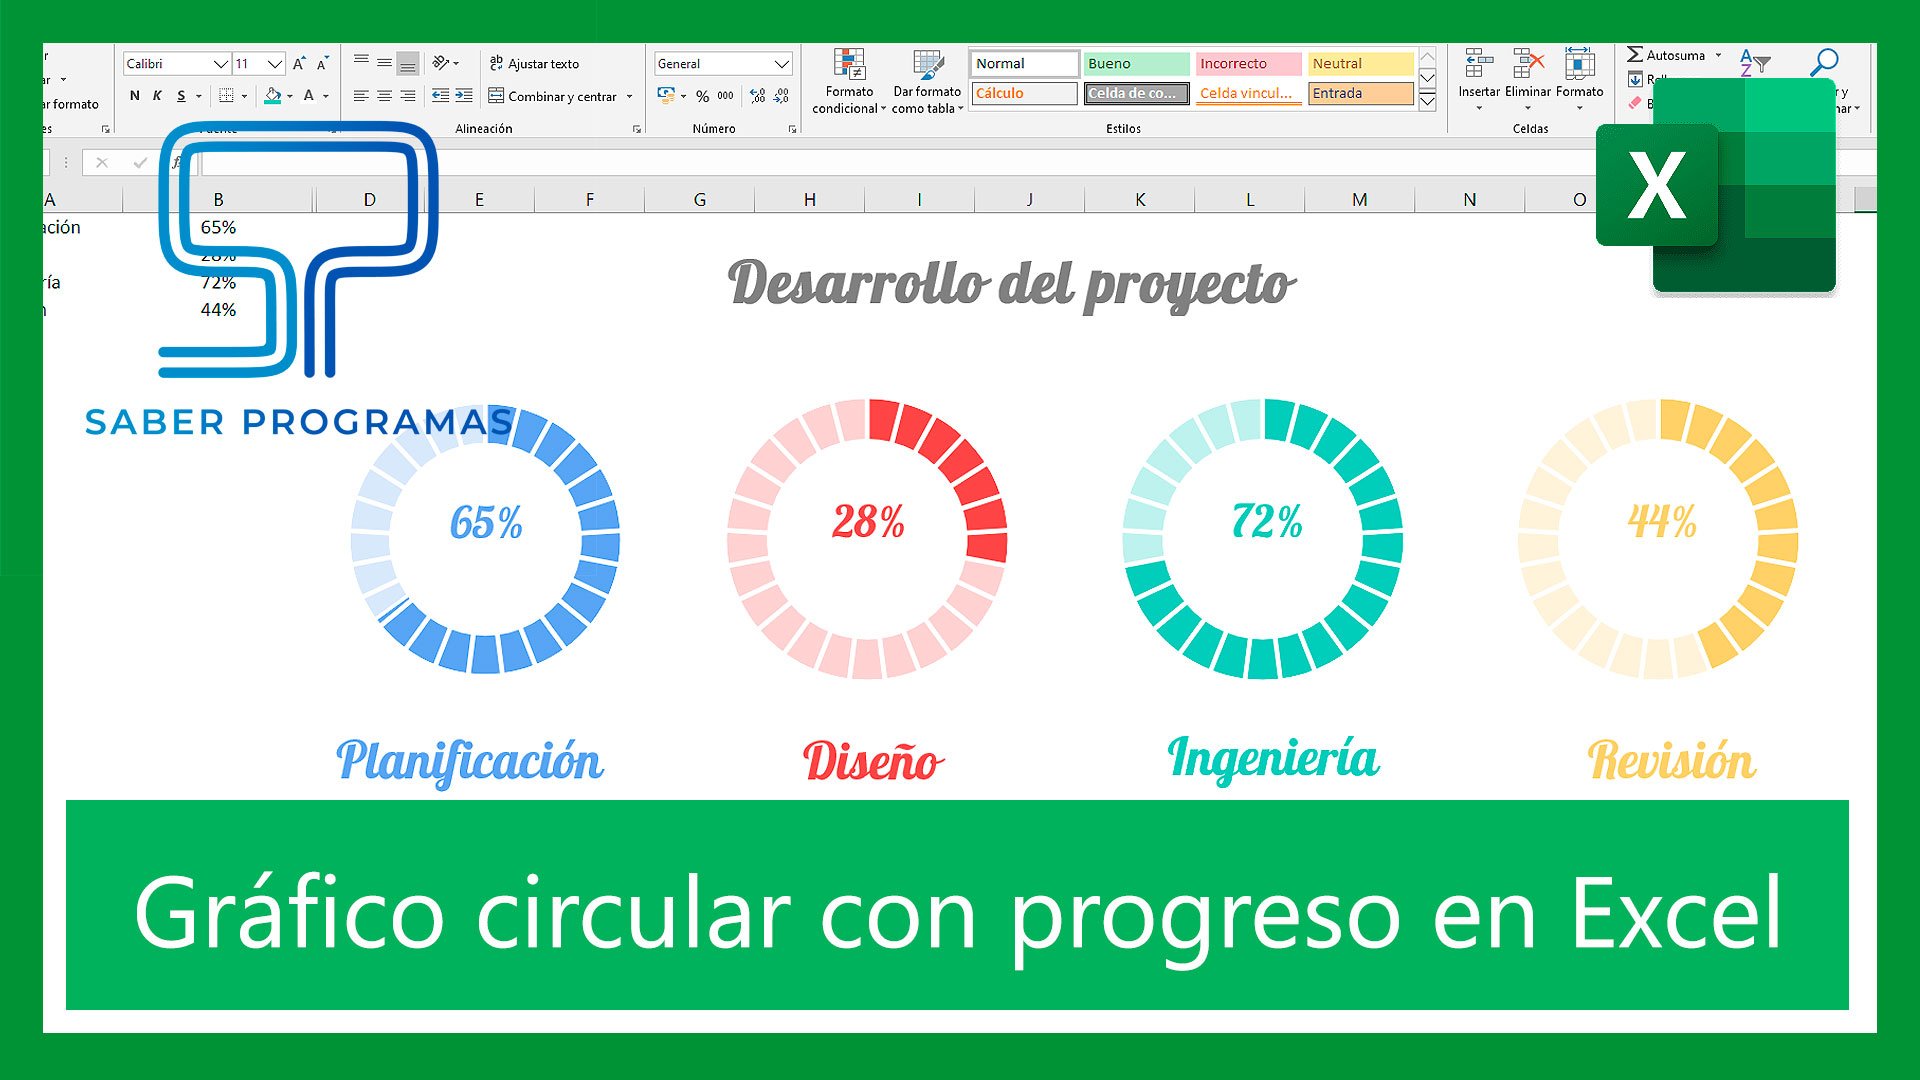 Gráfico de progreso circular en Excel | Saber Programas